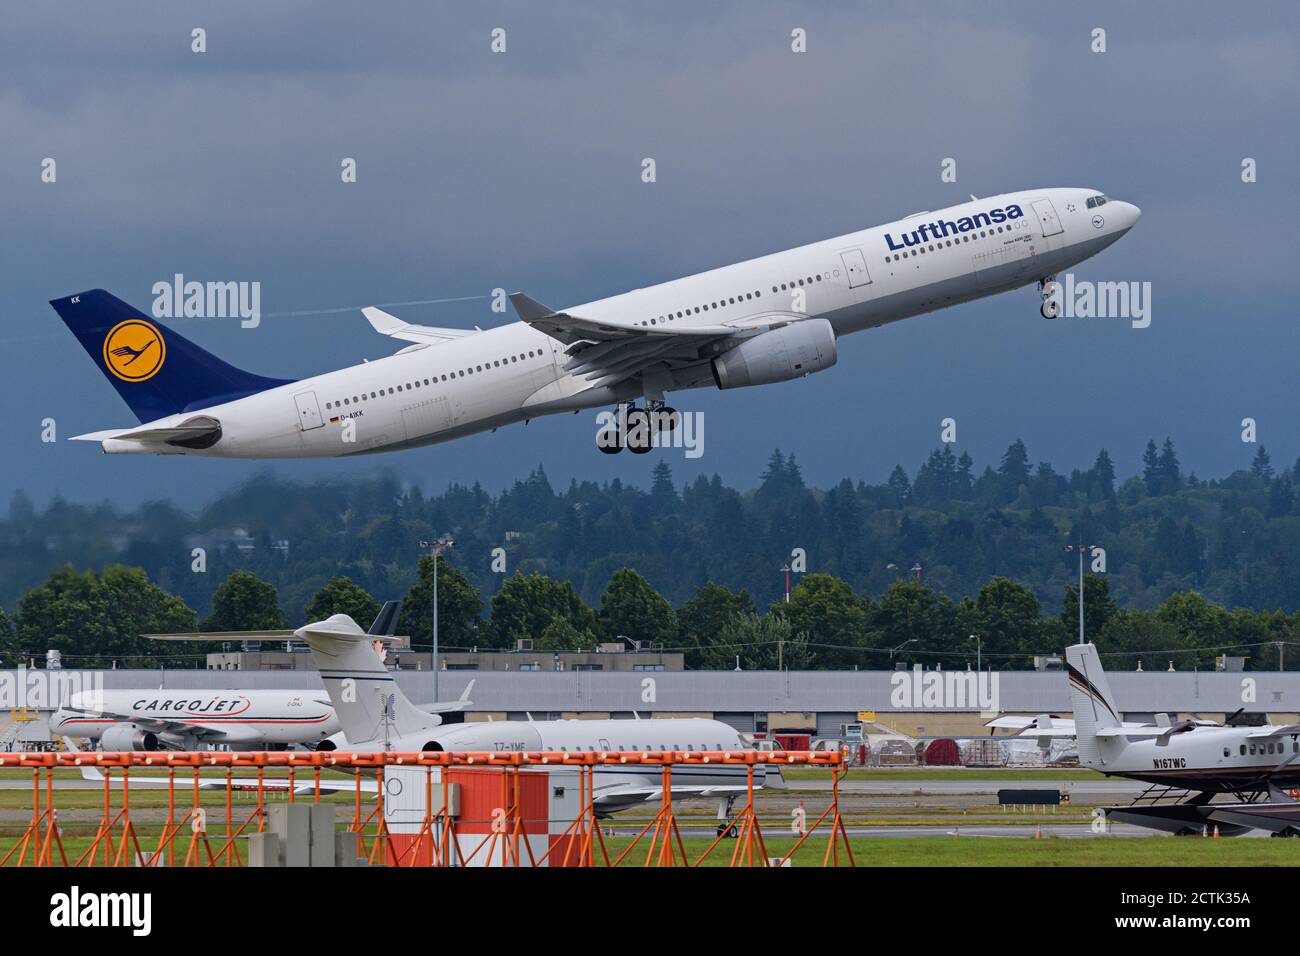 Lufthansa avión Airbus A330-300 aerotransportado después de despegue desde el Aeropuerto Internacional de Vancouver. Foto de stock